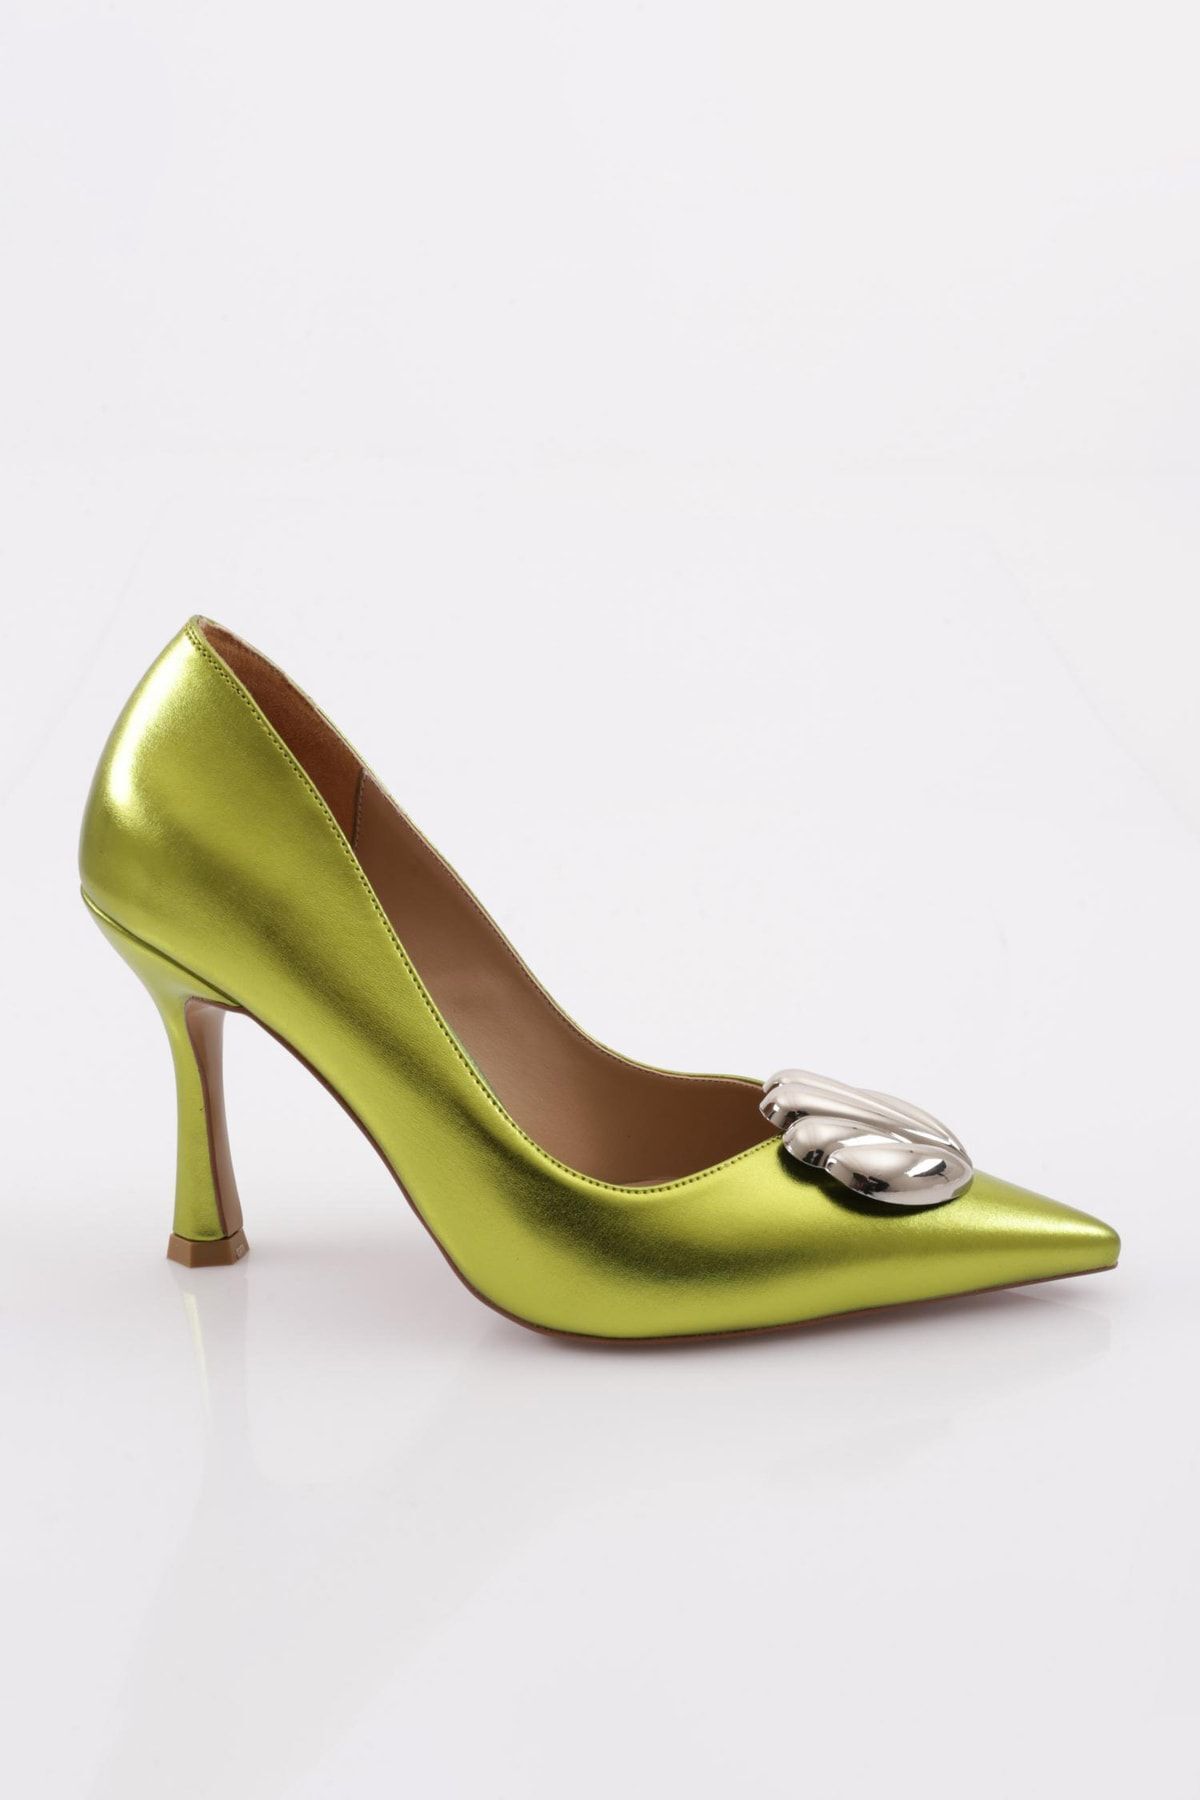 Dgn 9059 Kadın Topuklu Ayakkabı Limon Metalik